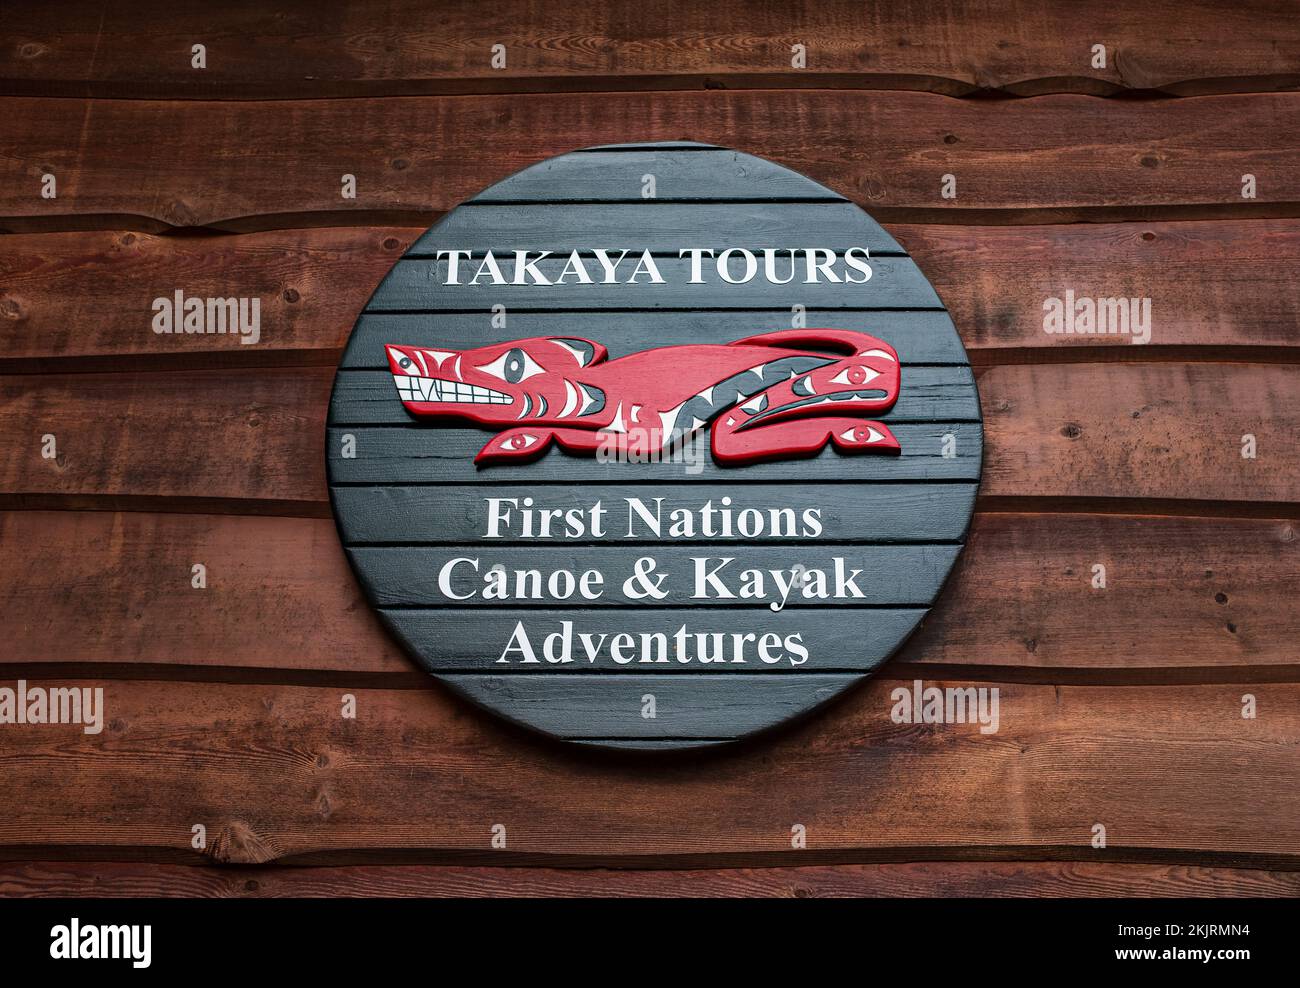 Panneau de location de canoë et kayak. Le panneau aventures accueille les touristes, propose des visites guidées de Takaya, des kayaks et des canoës à louer pour les touristes. Des informations Banque D'Images